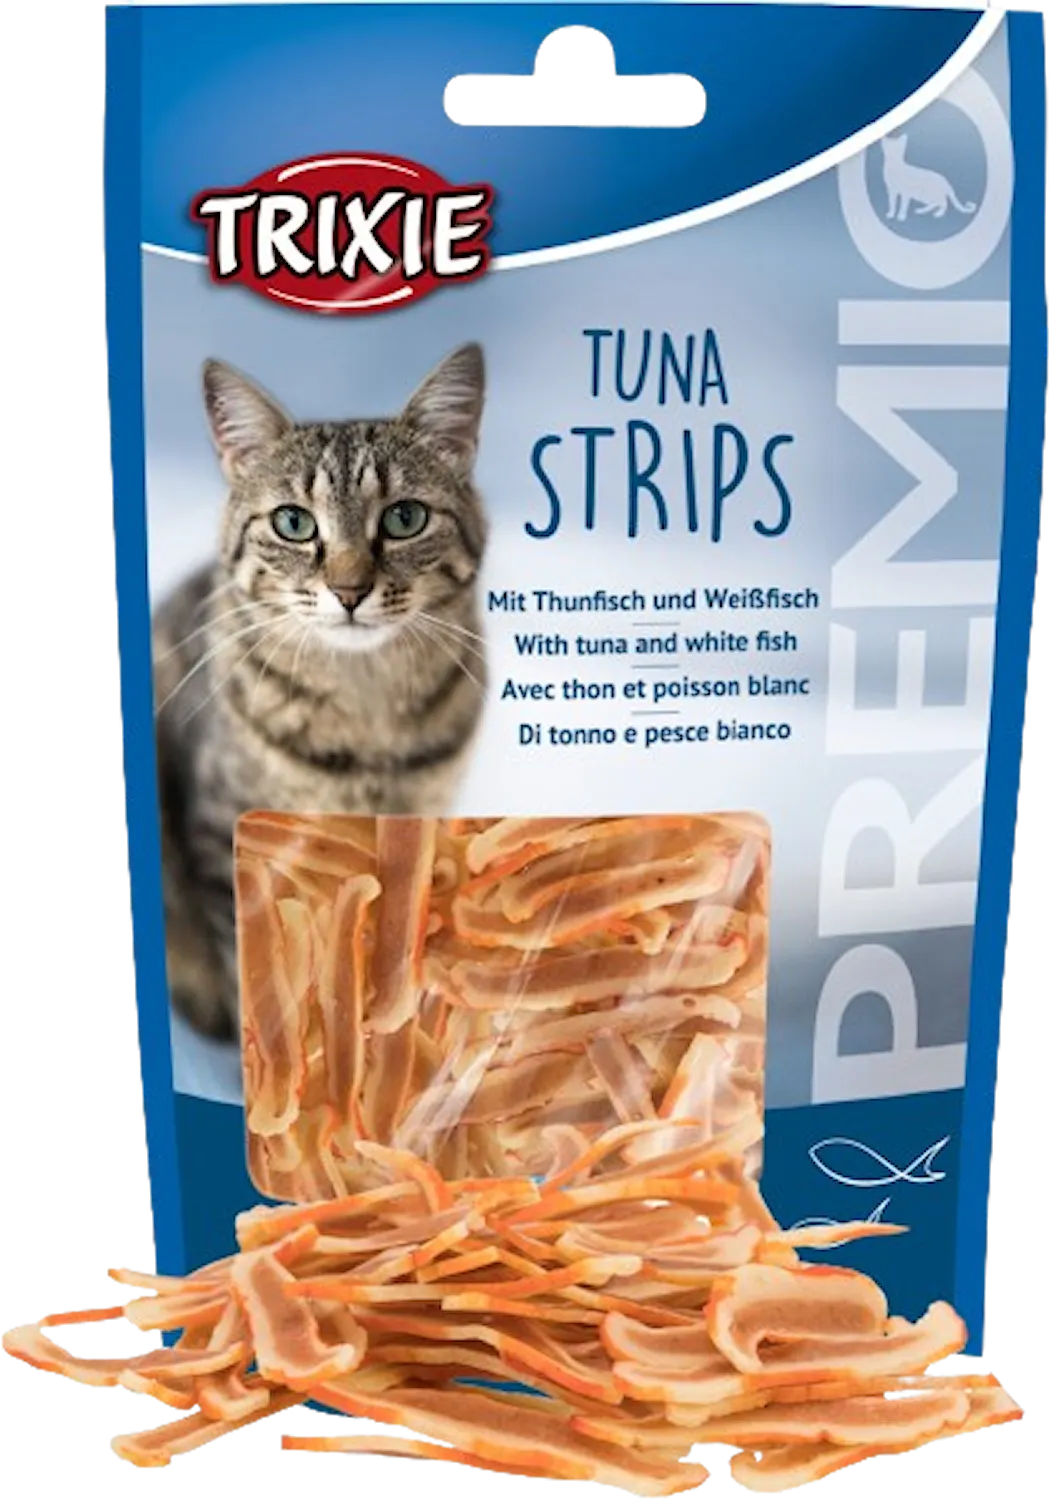 Trixie Premio Tuna Strips 20 g